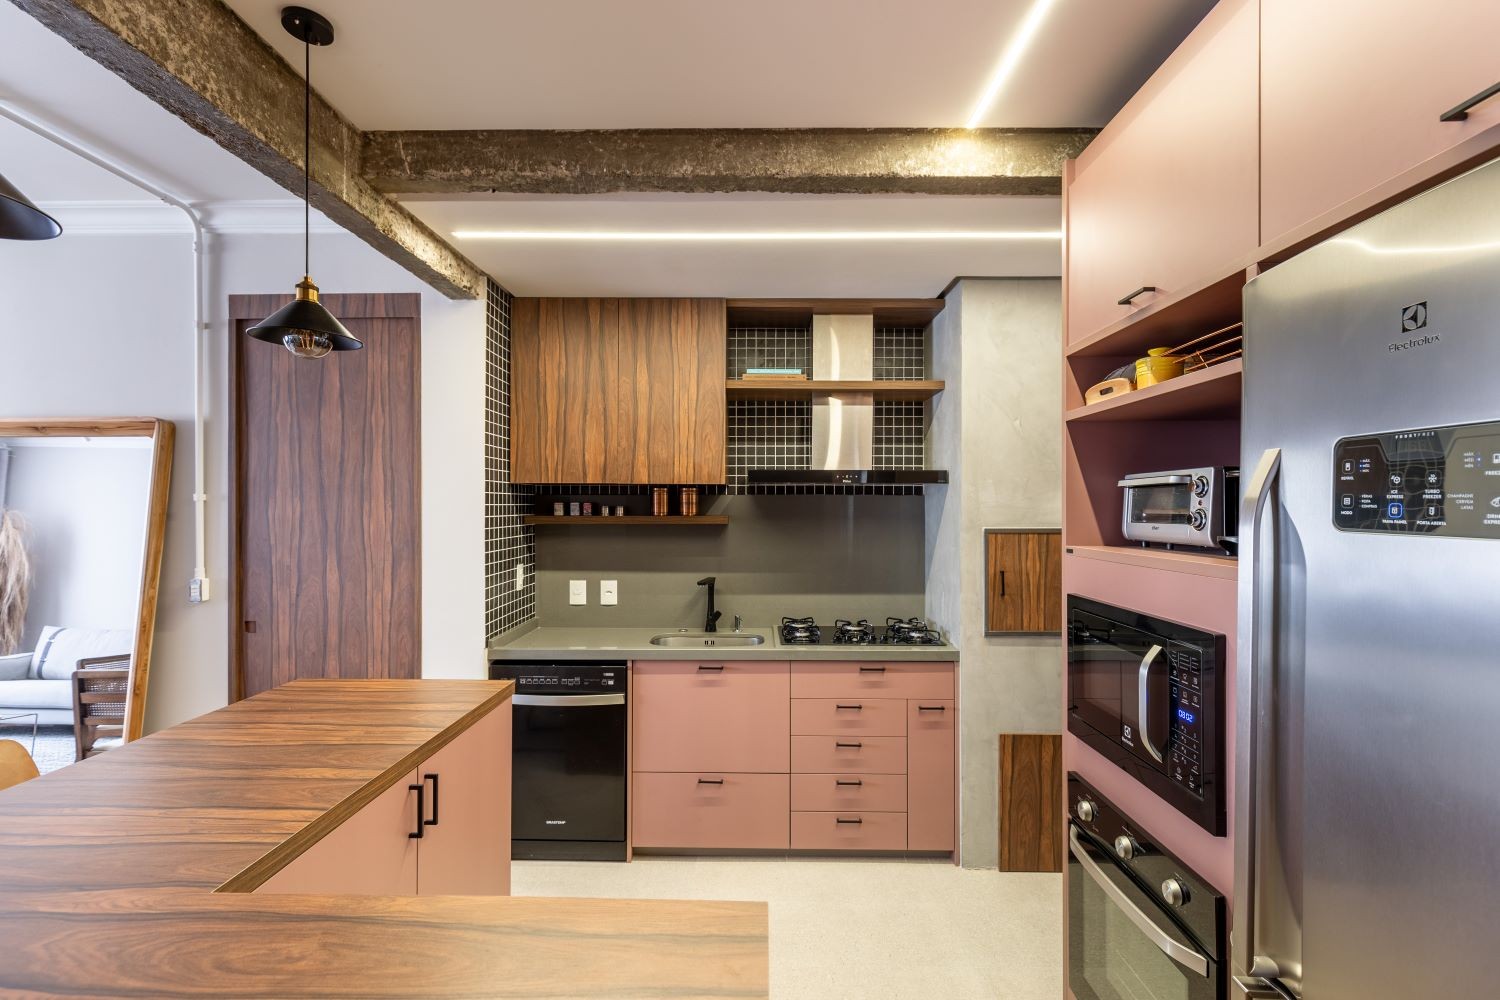 COZINHA | Com mobiliário assinado pela Finger Móveis, a cozinha é elegante e sofisticada (Foto: Divulgação / Marcelo Donadussi)